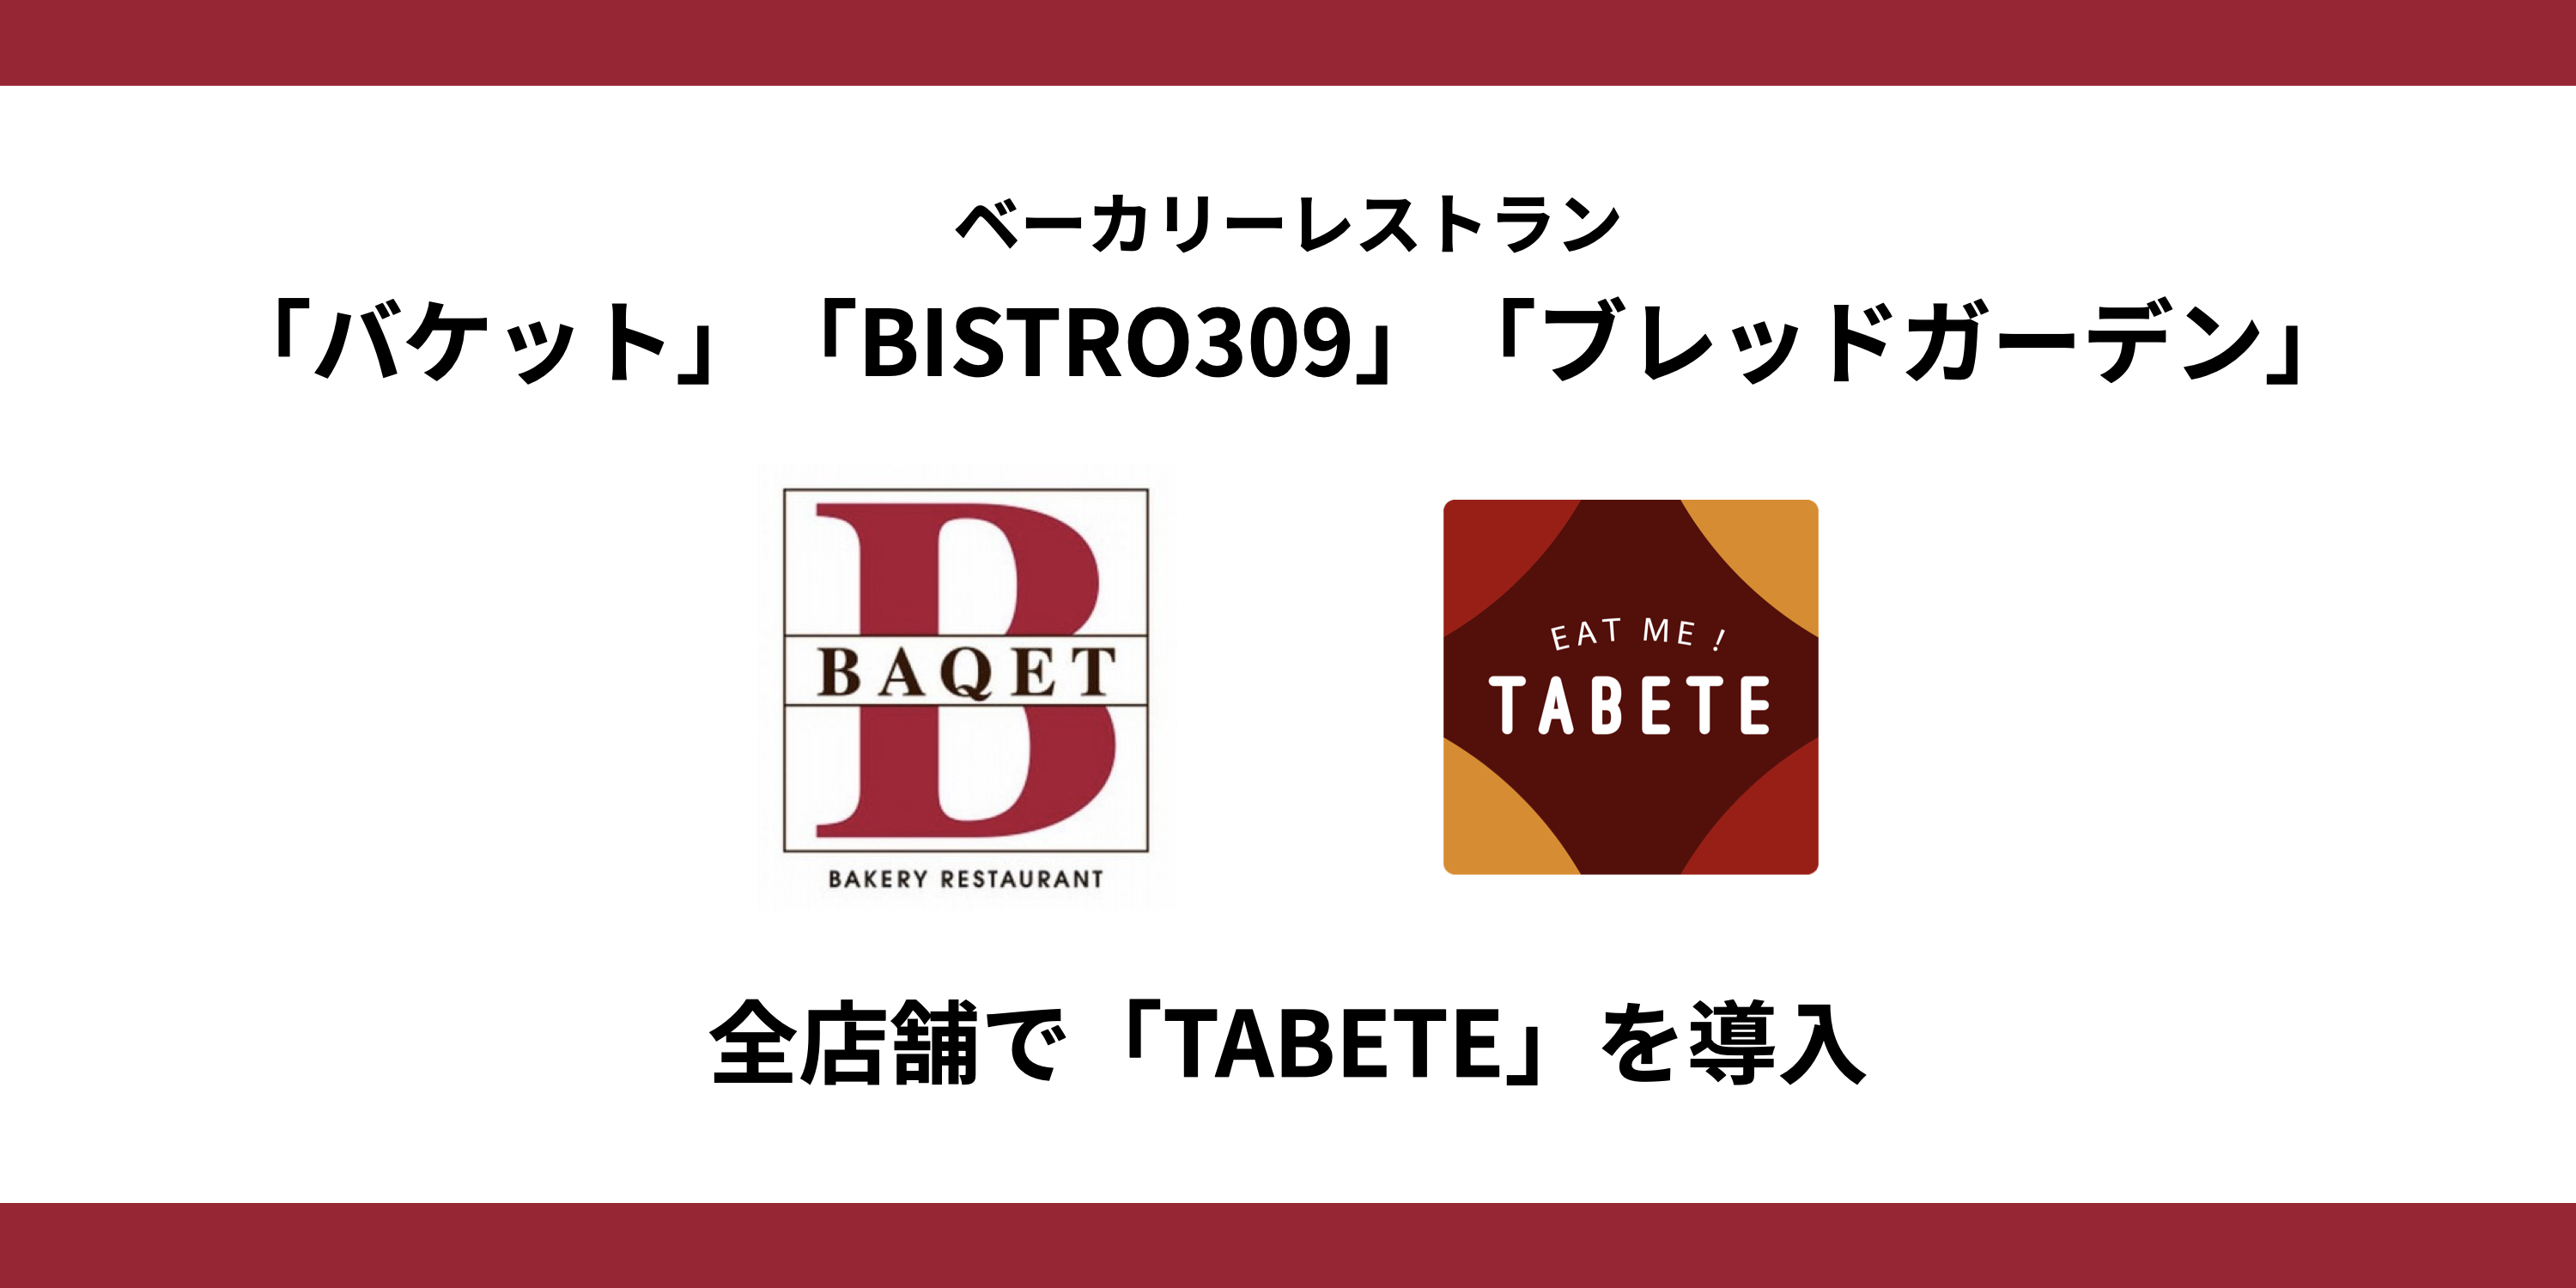 ベーカリーレストラン「バケット」「BISTRO309」「ブレッドガーデン」全店舗で食品ロス削減のために「TABETE」を導入のサブ画像1